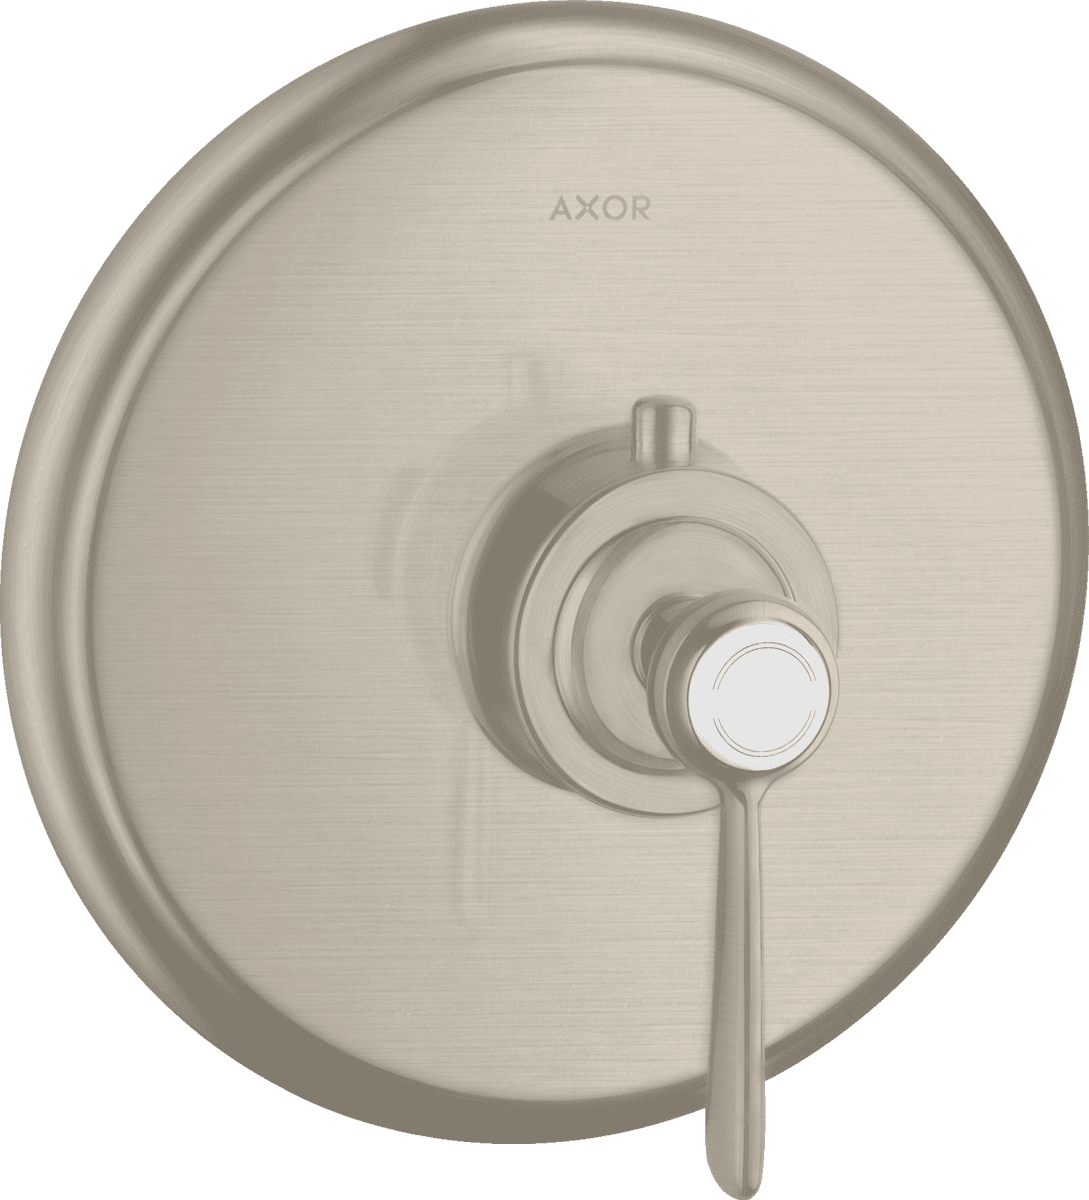 Bild von HANSGROHE AXOR Montreux Thermostat Unterputz mit Hebelgriff #16823820 - Brushed Nickel